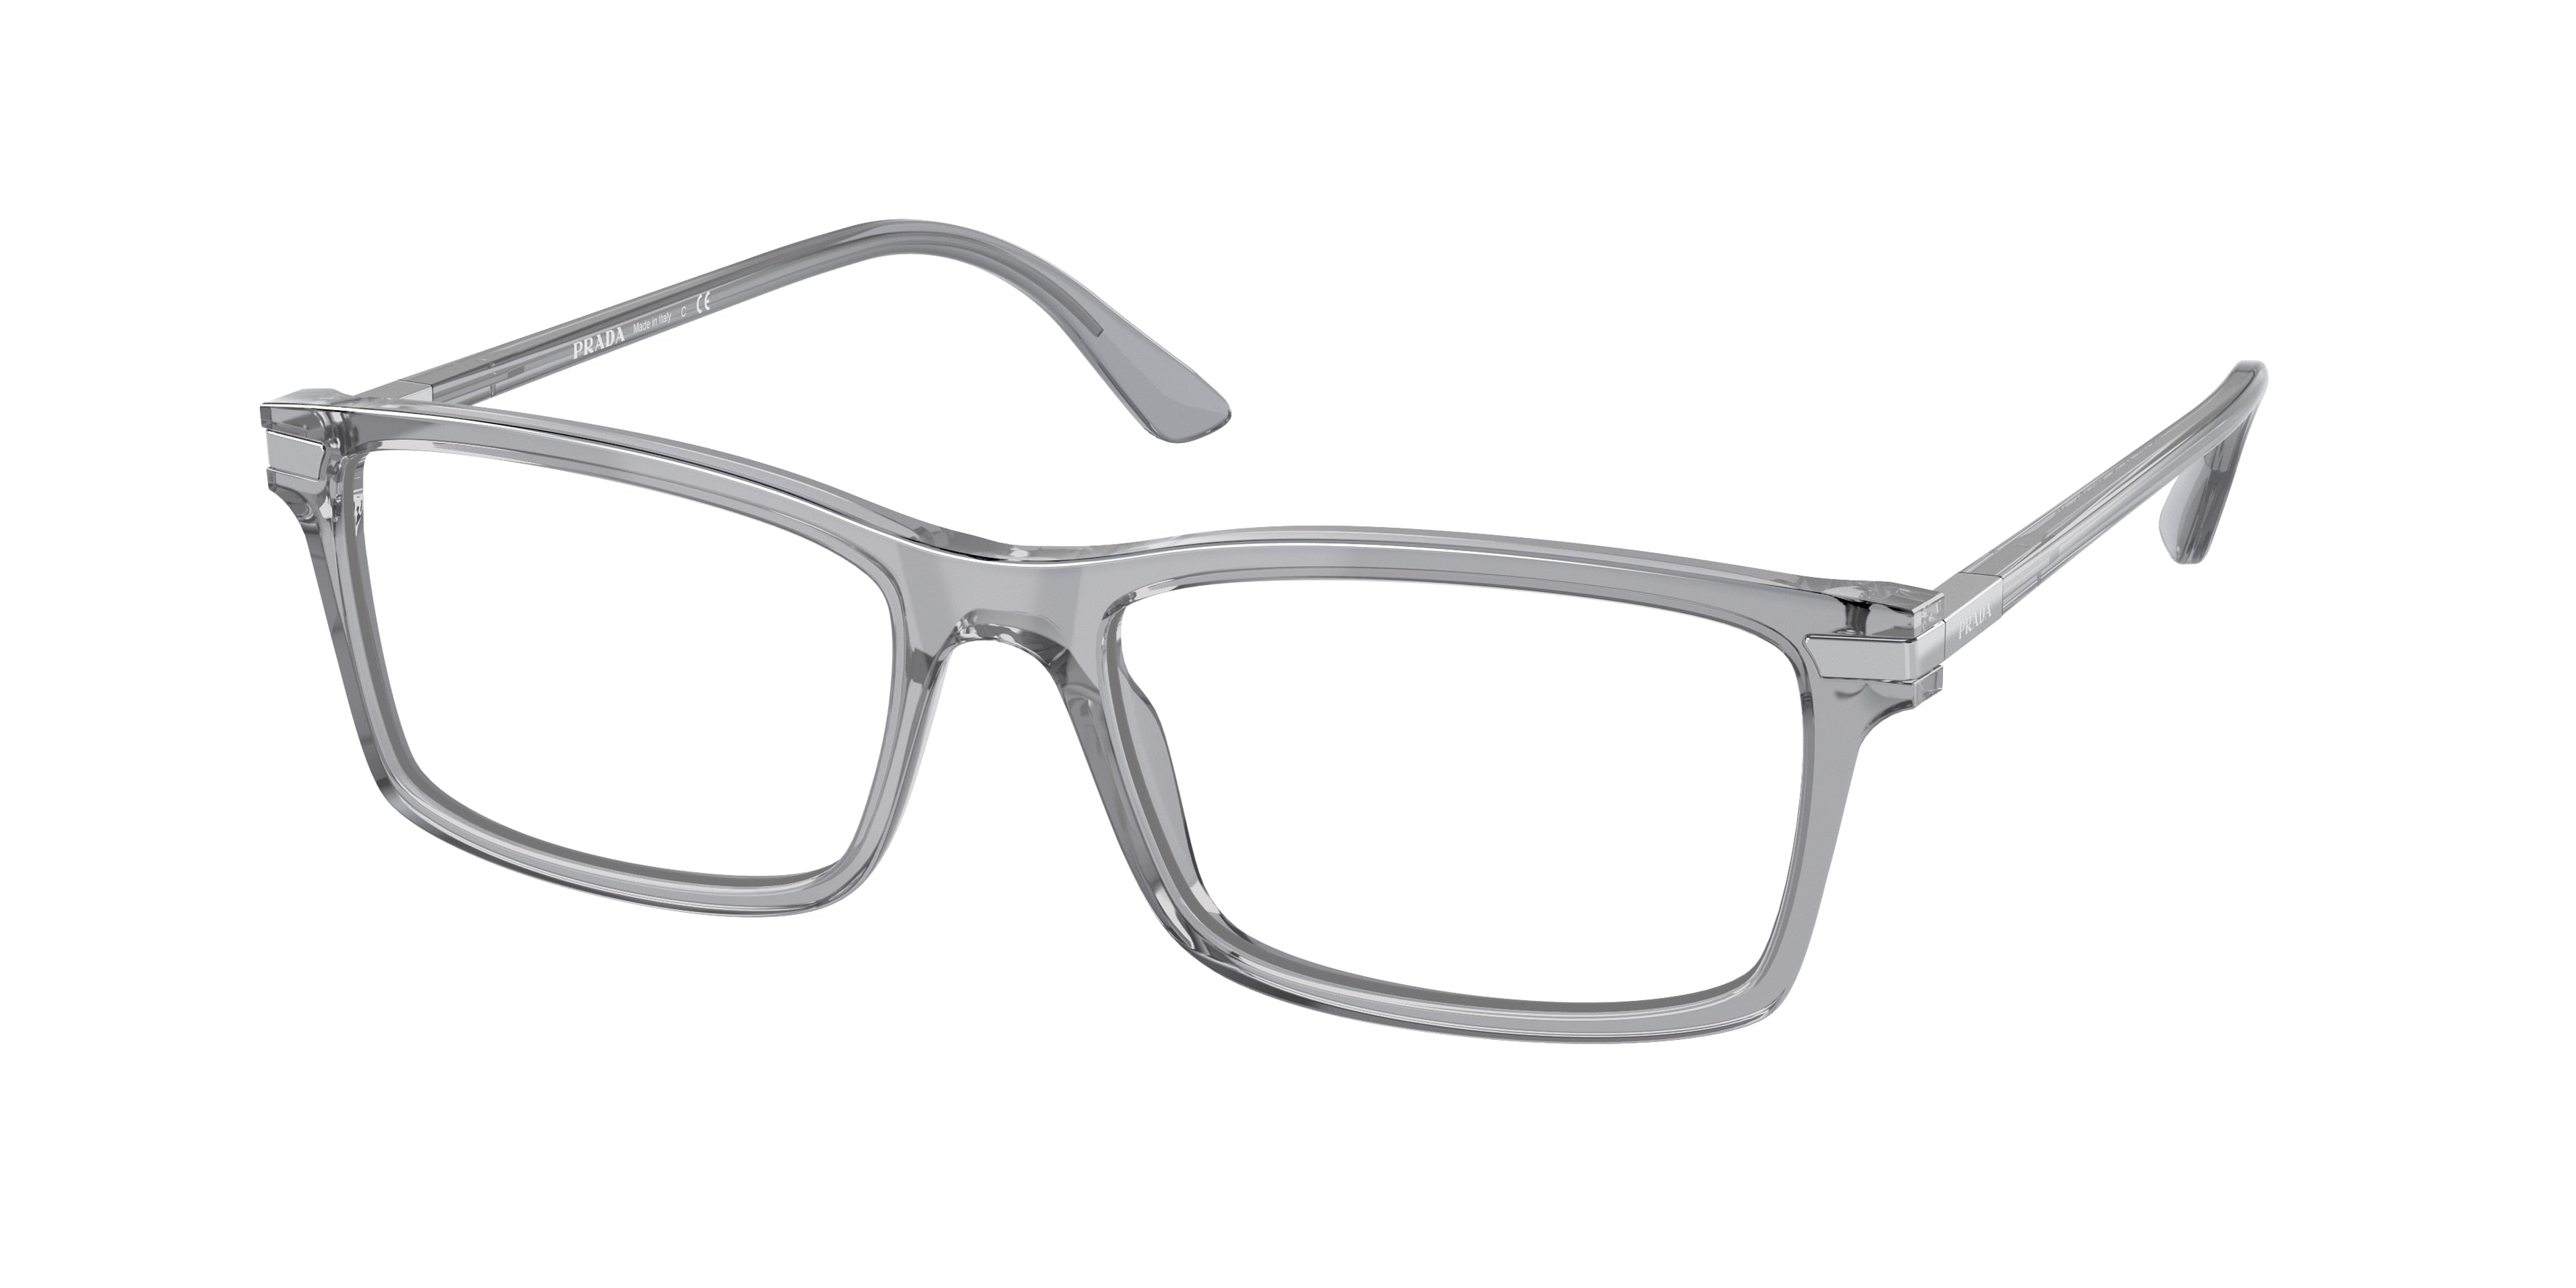 Prada PR03YV Rectangle Eyeglasses  08U1O1-Trasparent Grey 56-150-17 - Color Map Grey